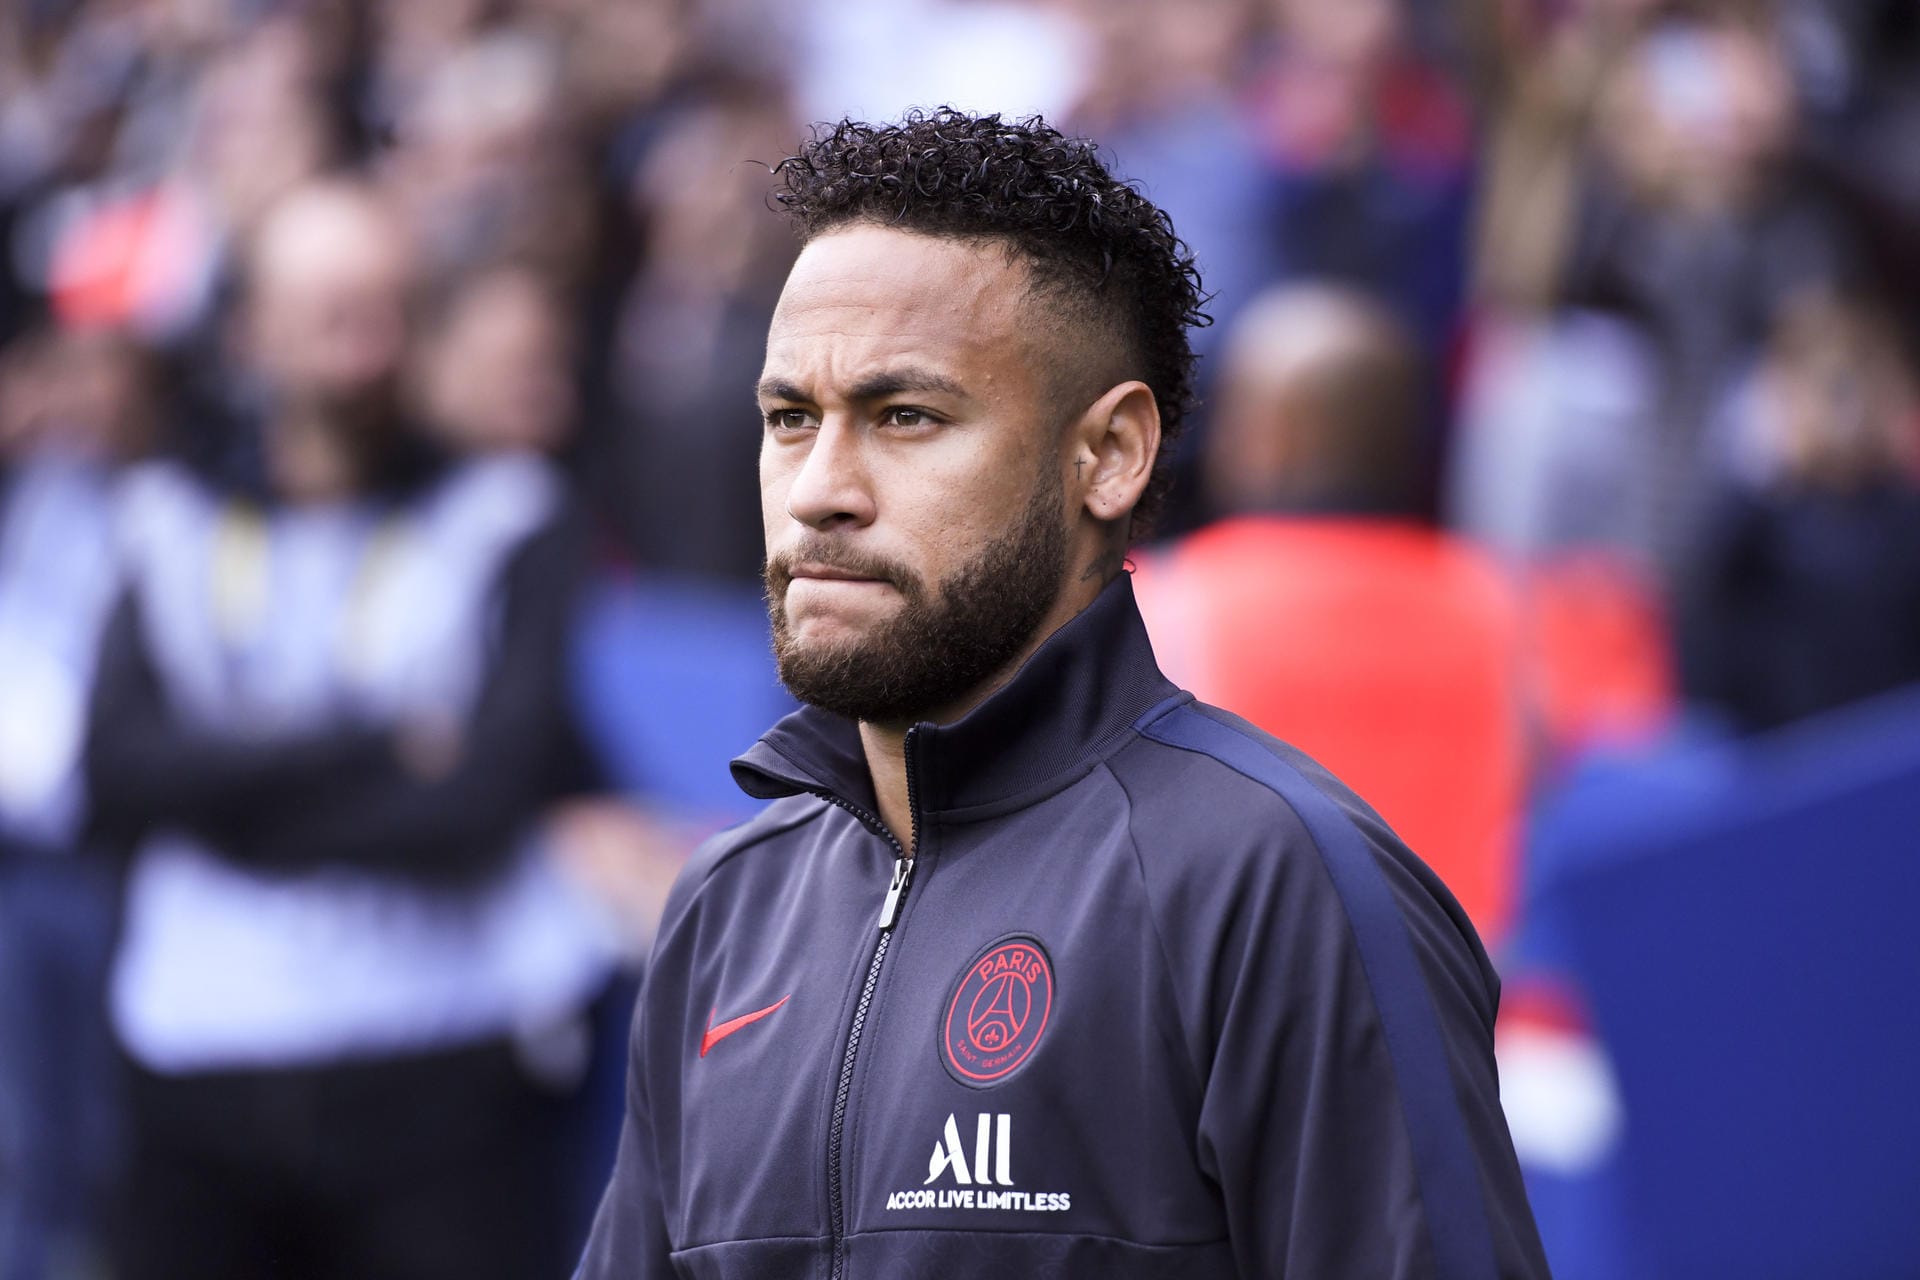 Neymar (2019): Der PSG-Star wollte im Sommer 2019 einen Vereinswechsel erzwingen und fehlte unentschuldigt beim Trainingsauftakt. Dafür wurde ihm die vertraglich festgelegte Ethik-Prämie für korrektes Verhalten auf und neben dem Platz gestrichen. Sein Fehlverhalten kostete ihm 375.000 Euro.